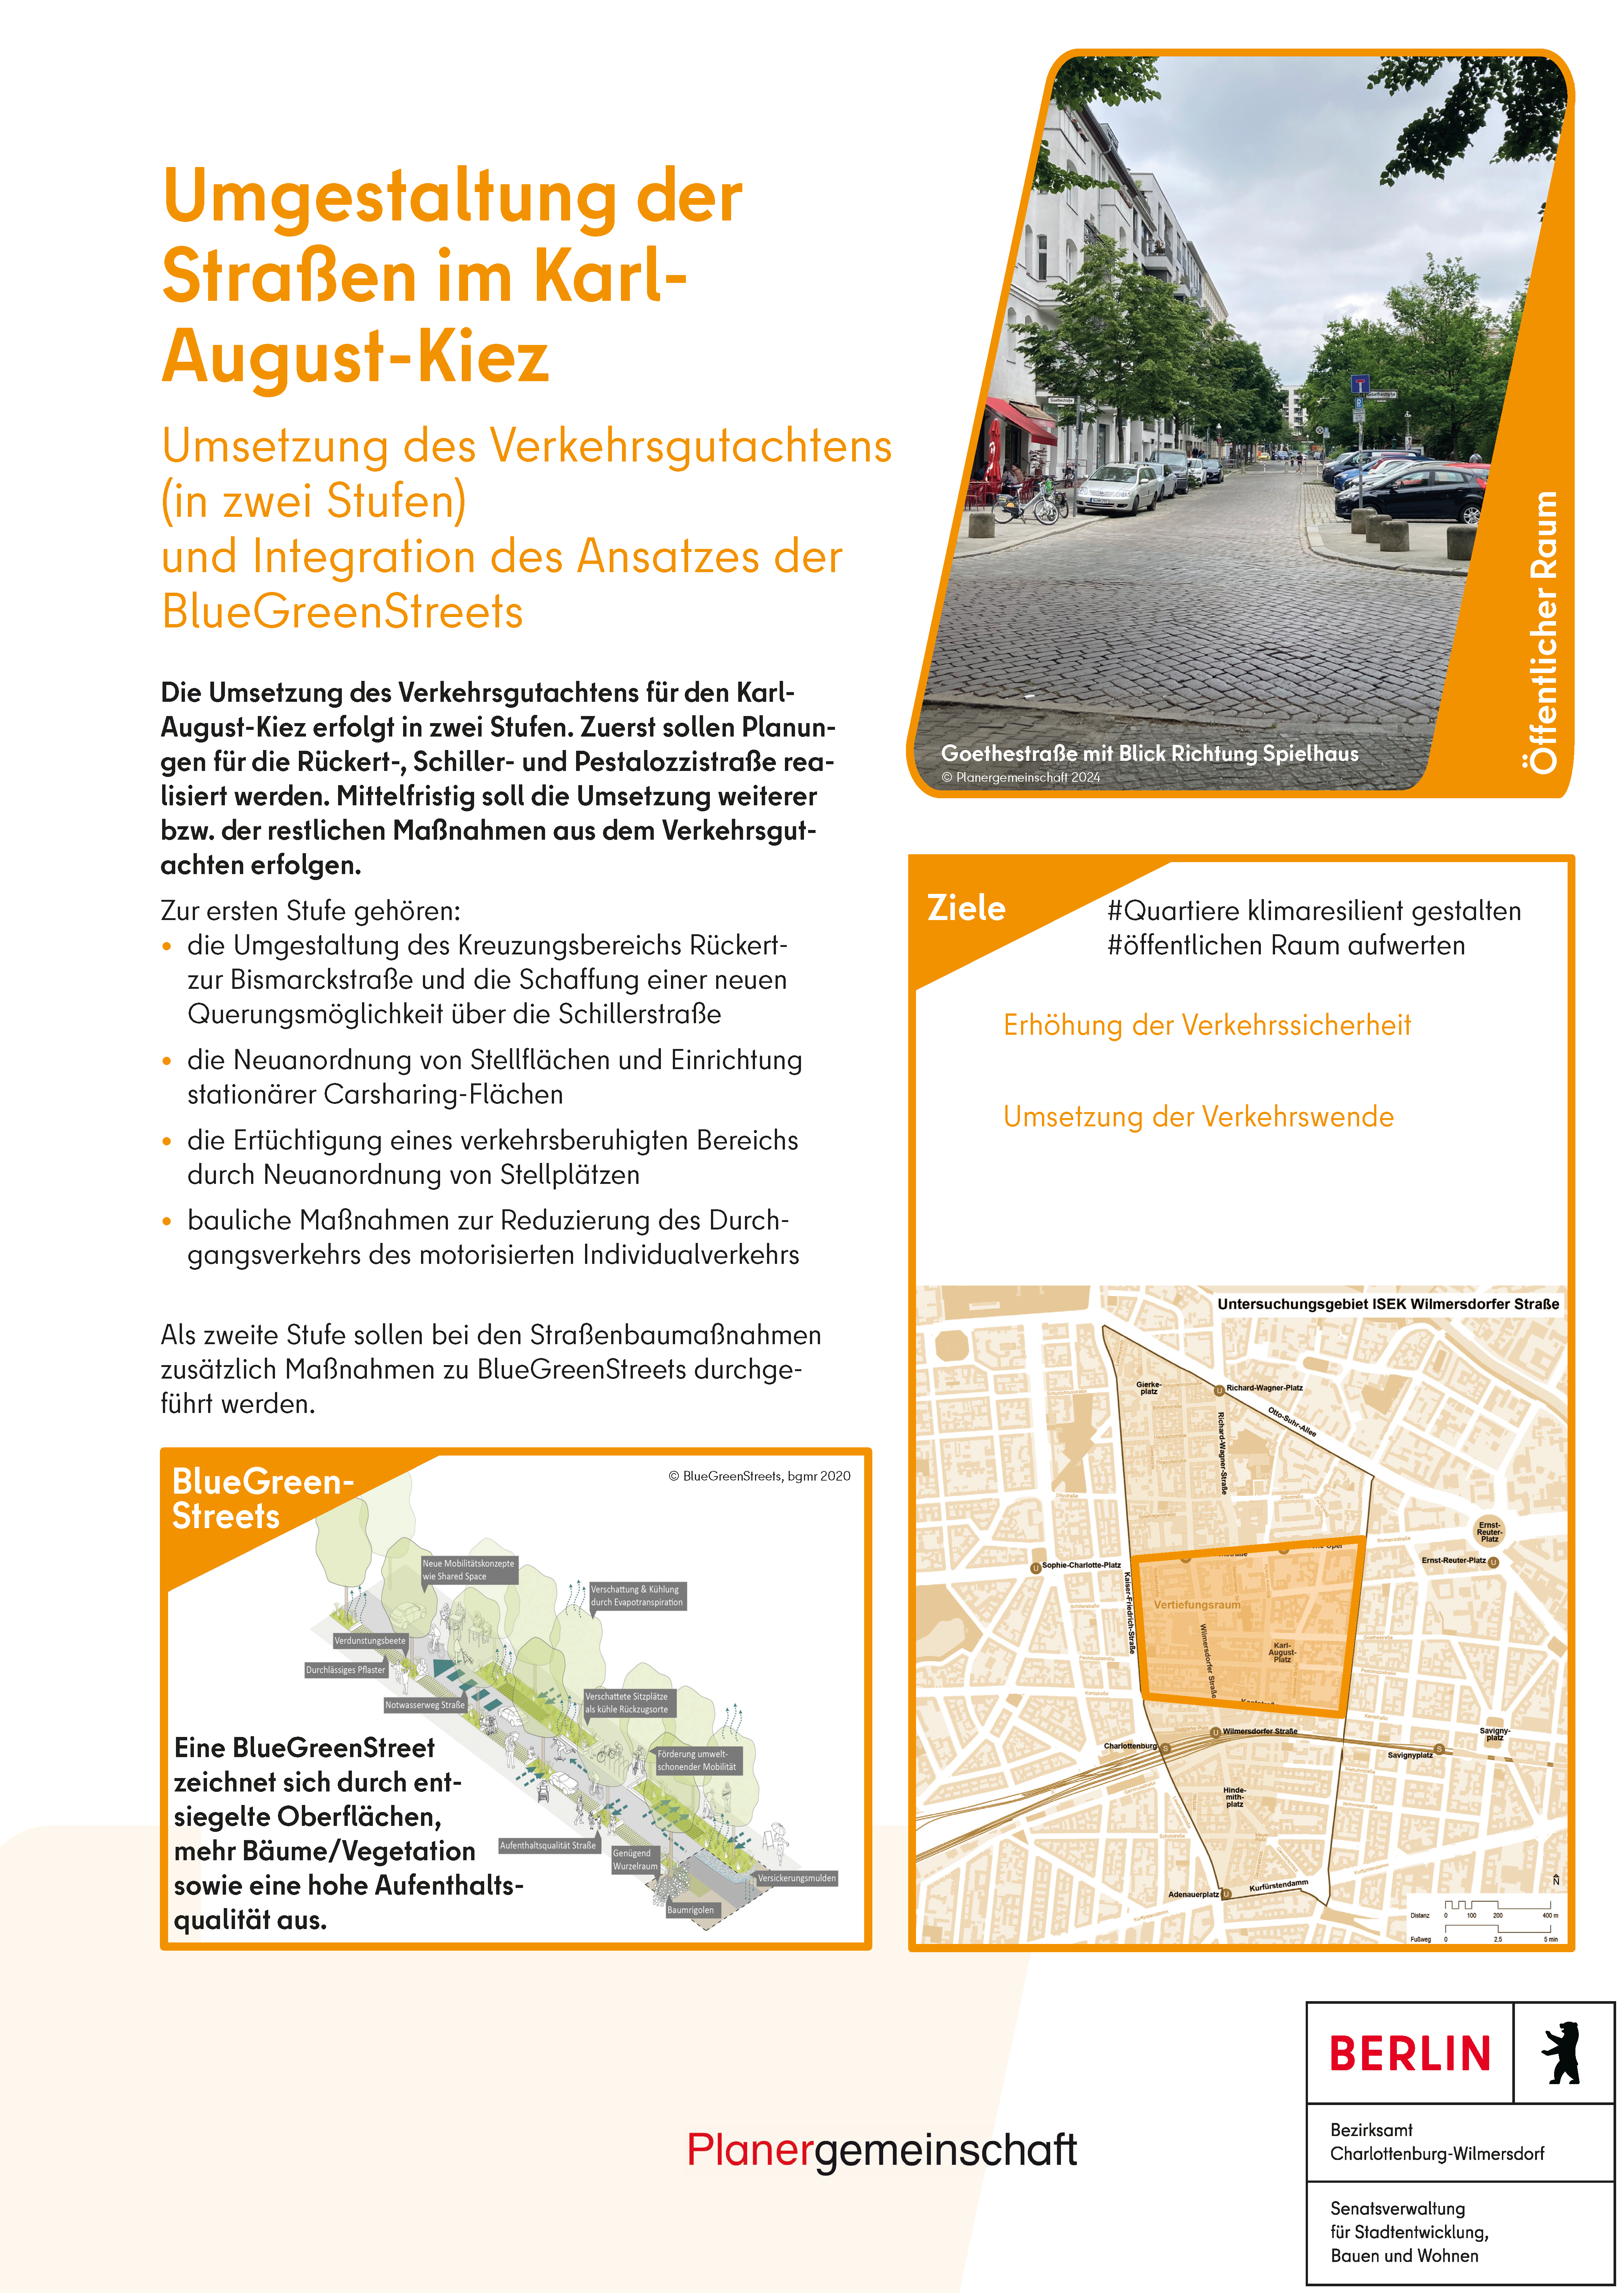 Umgestaltung Straßen im Karl-August-Kiez